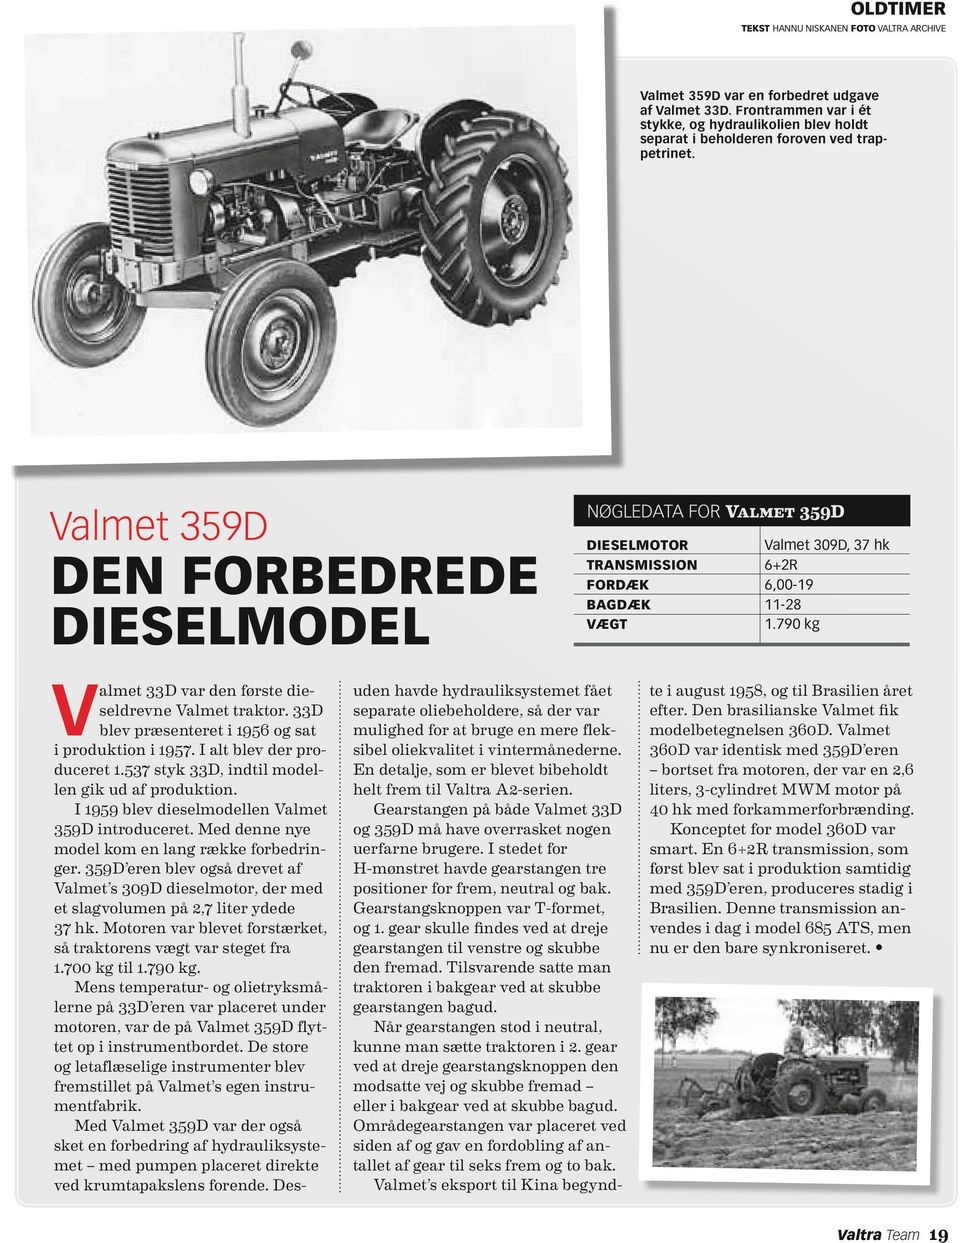 Valmet 359D Nøgledata for Valmet 359D den forbedrede dieselmodel V almet 33D var den første dieseldrevne Valmet traktor. 33D blev præsenteret i 1956 og sat i produktion i 1957.